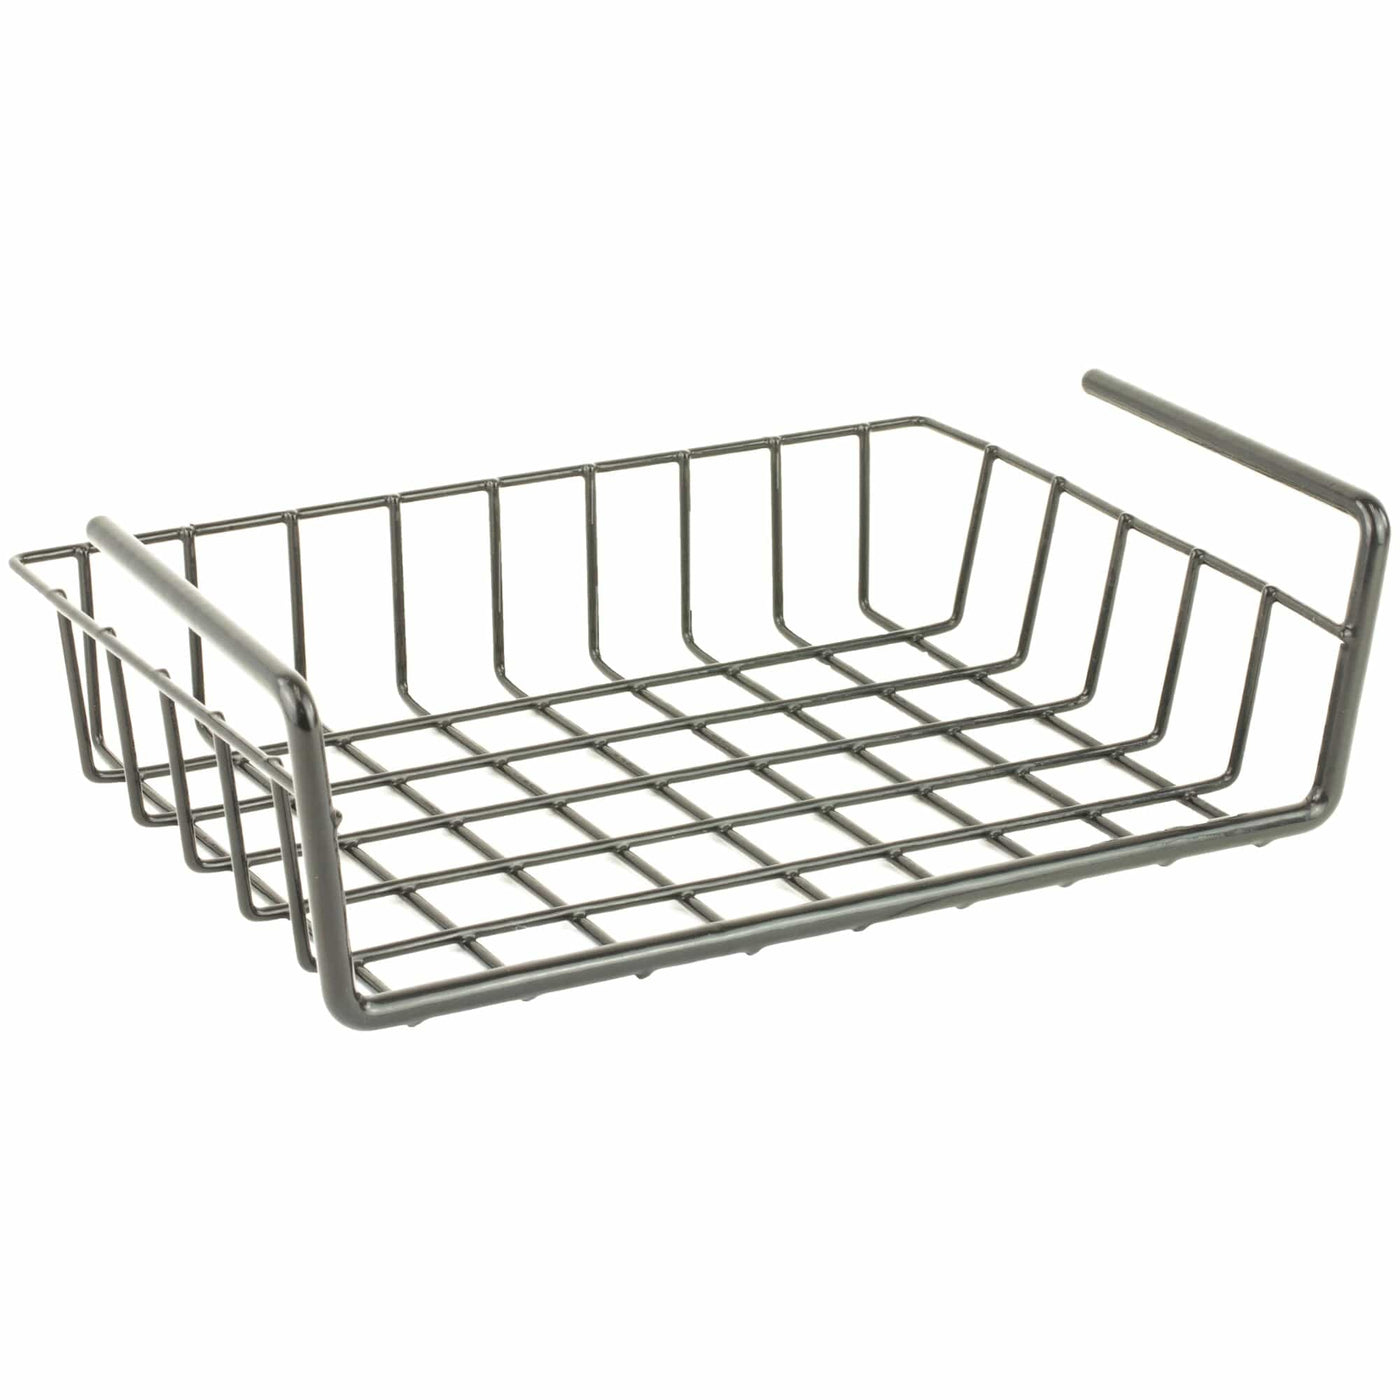 SnapSafe Snapsafe Hanging Shelf Basket 8.5x11 Safes/Security